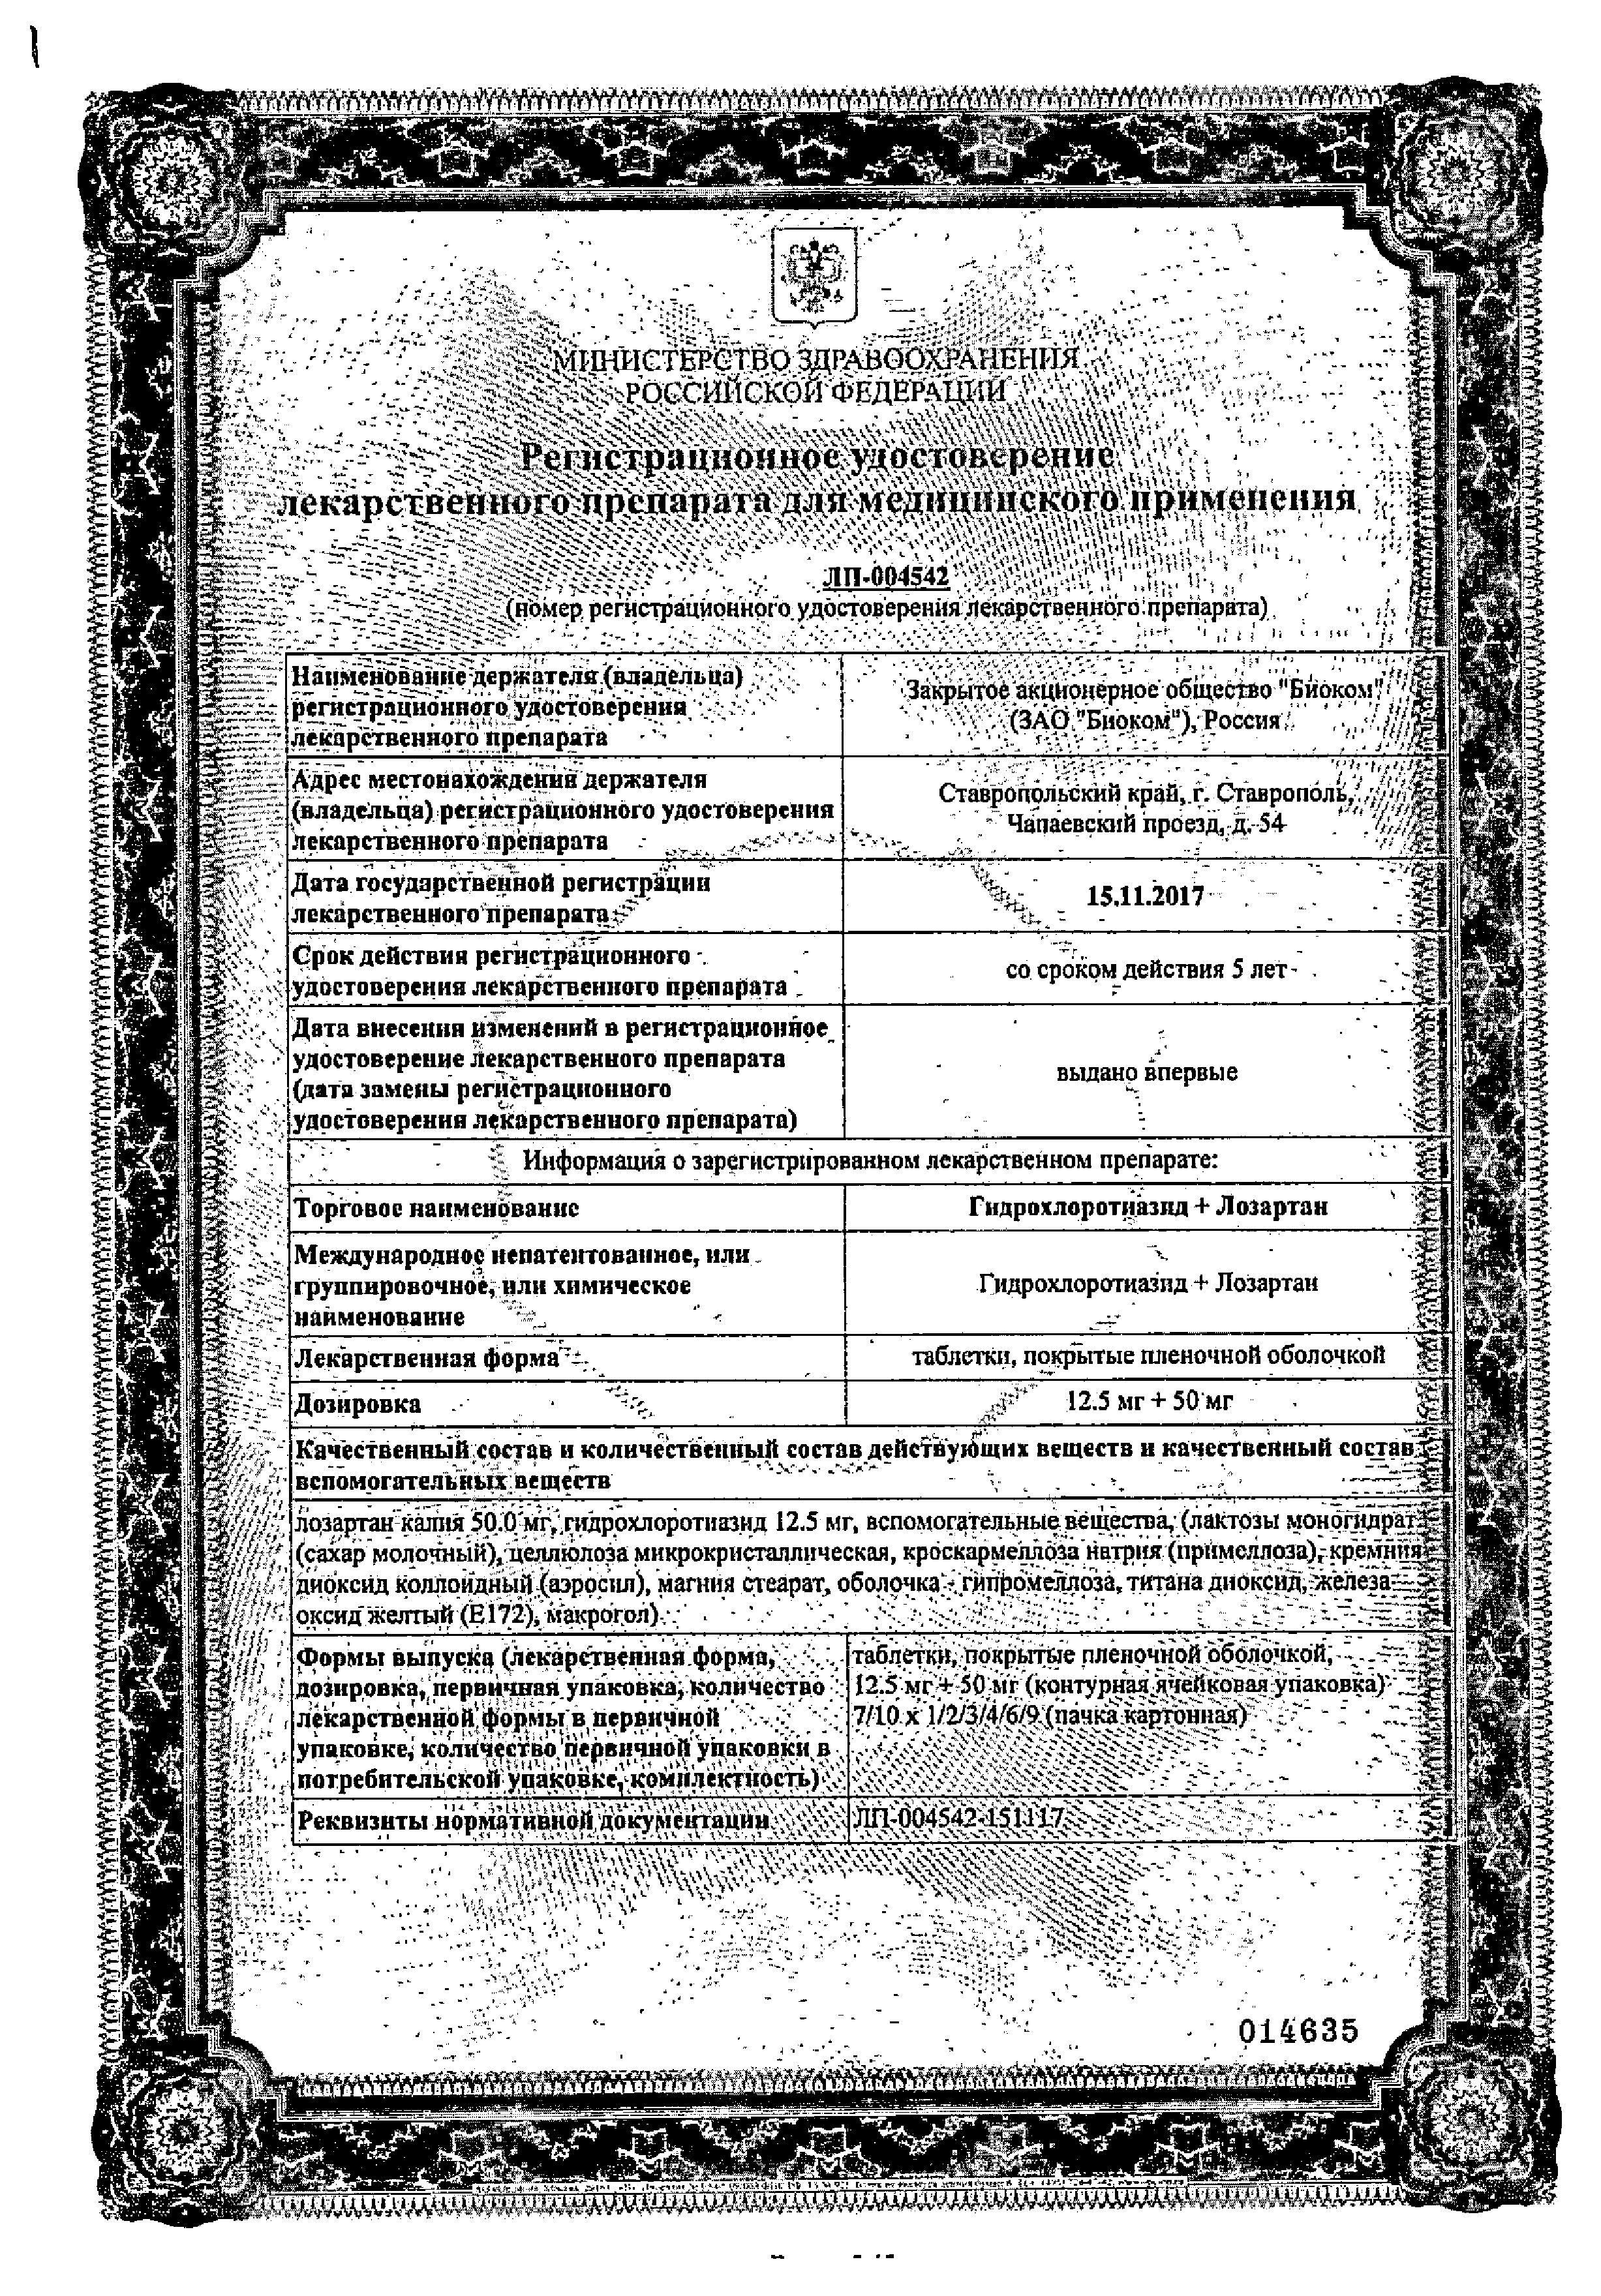 Гидрохлоротиазид + Лозартан сертификат